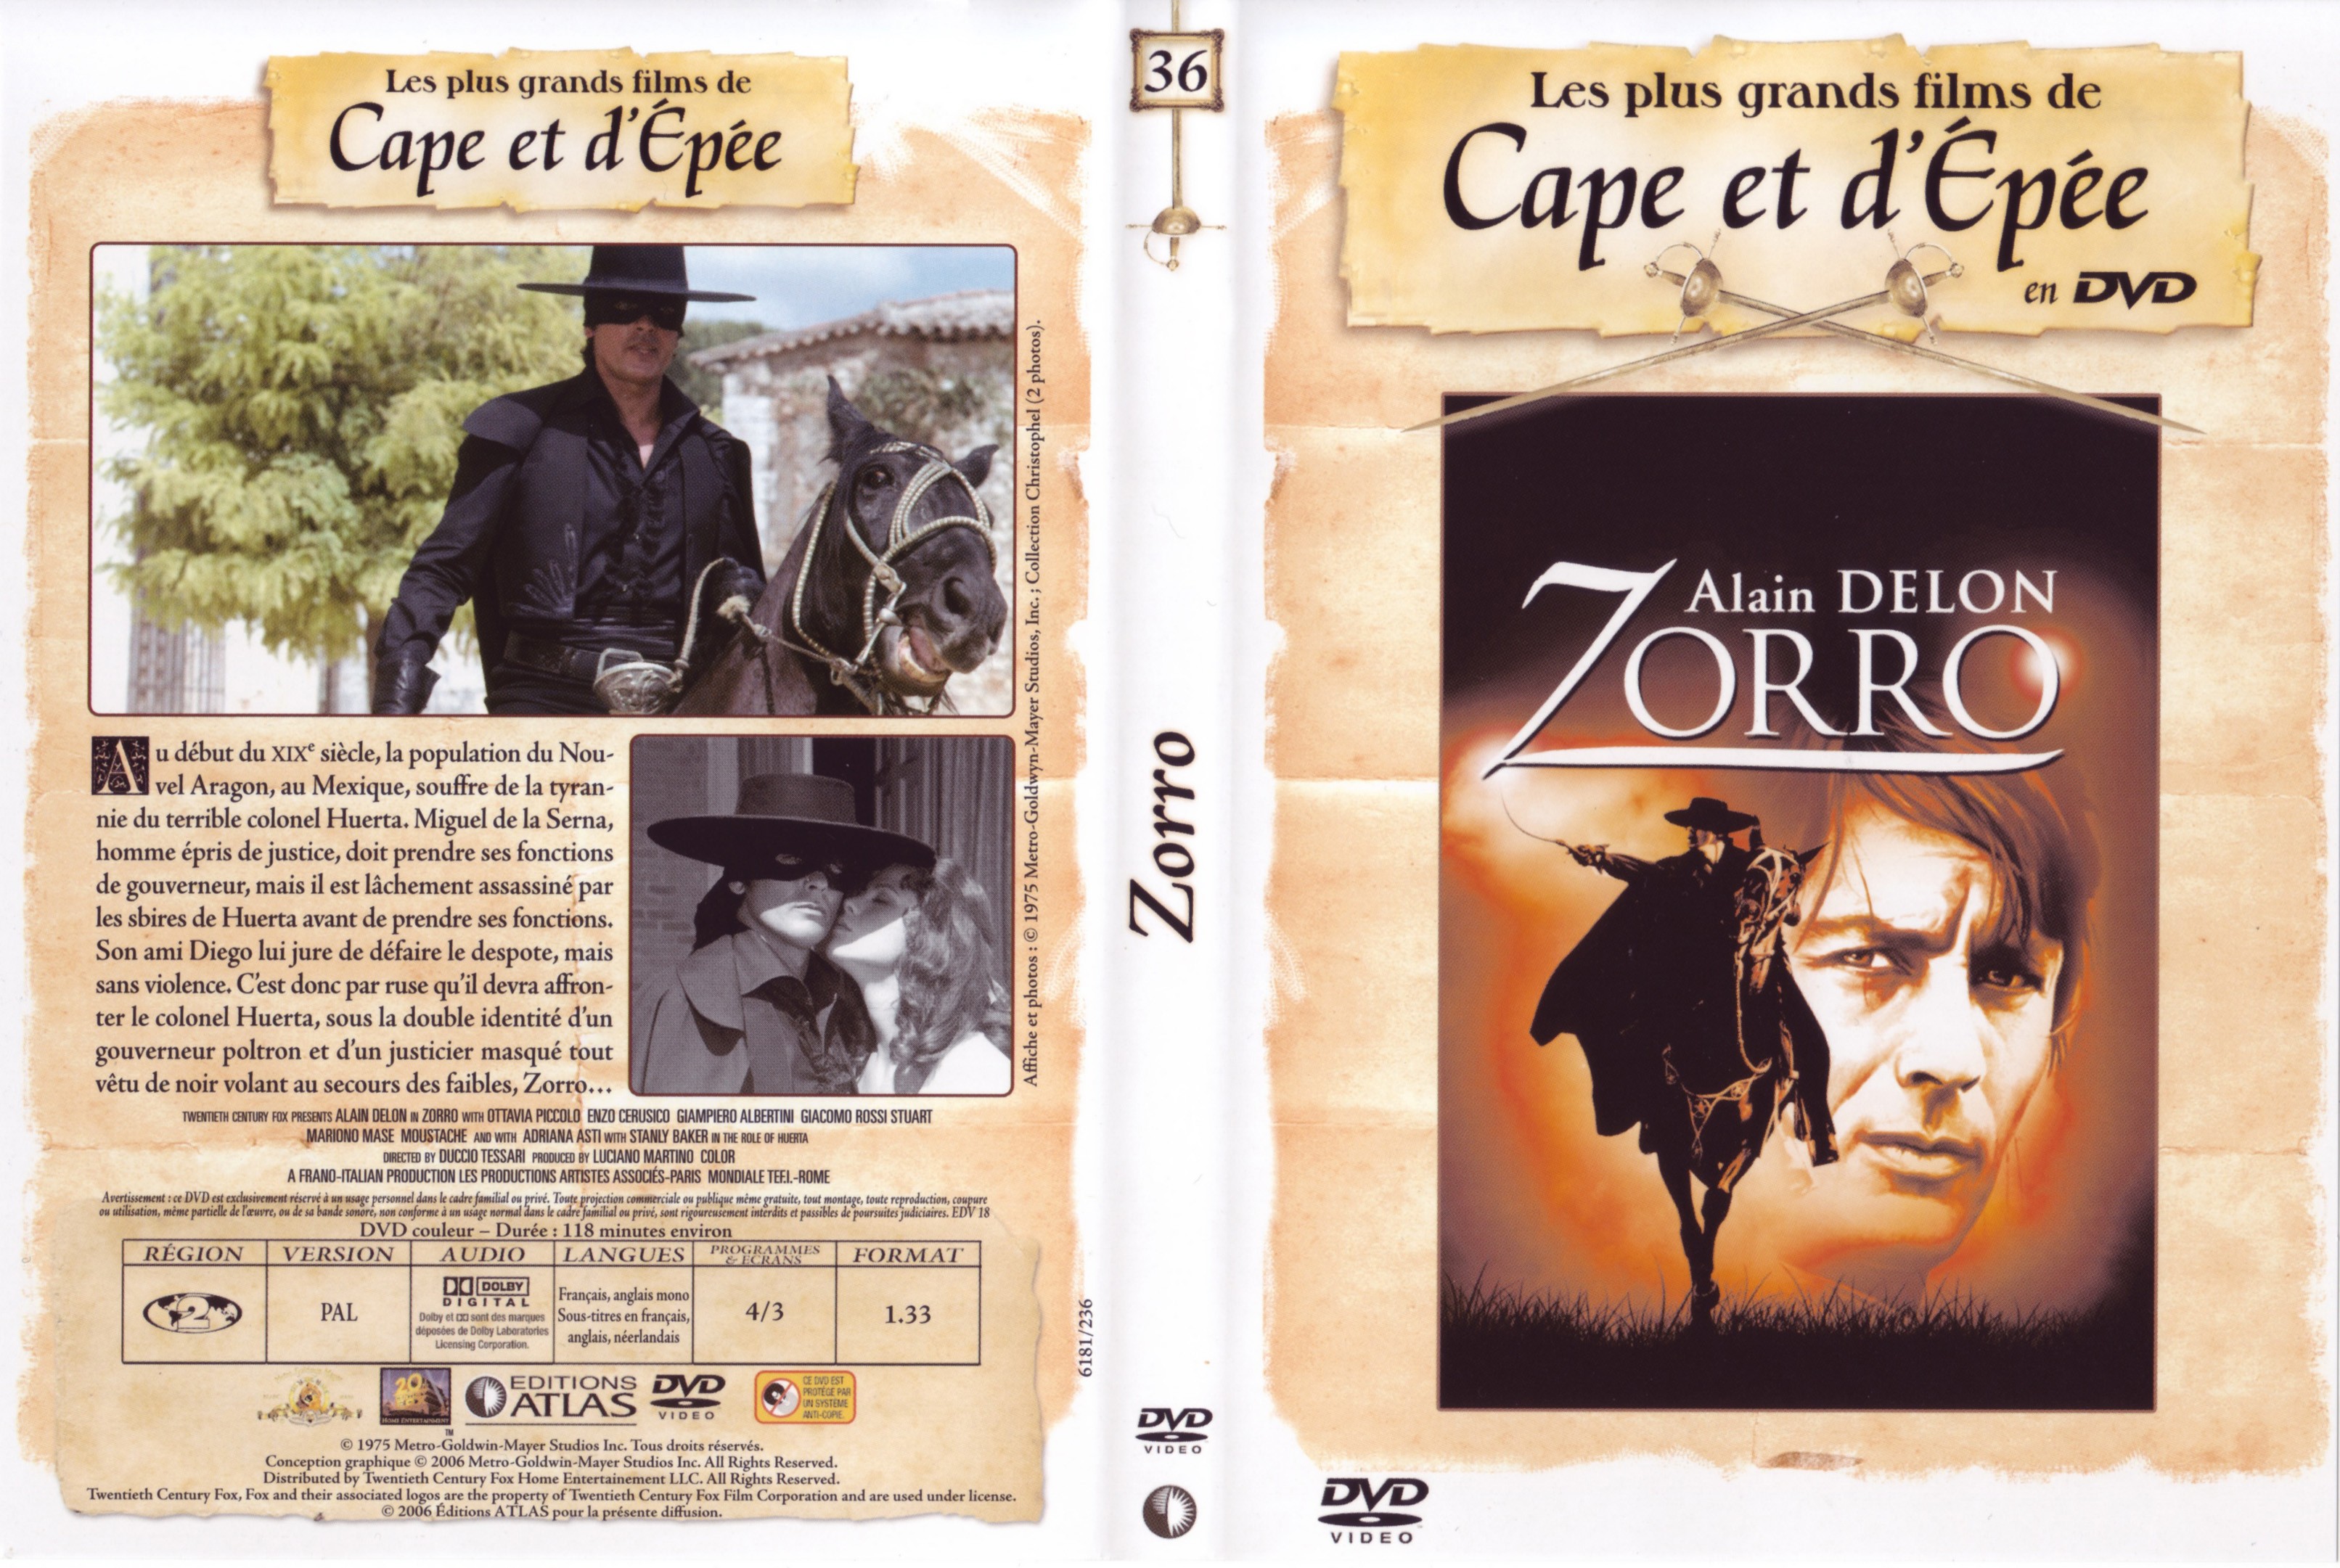 Jaquette DVD Zorro (Alain Delon)